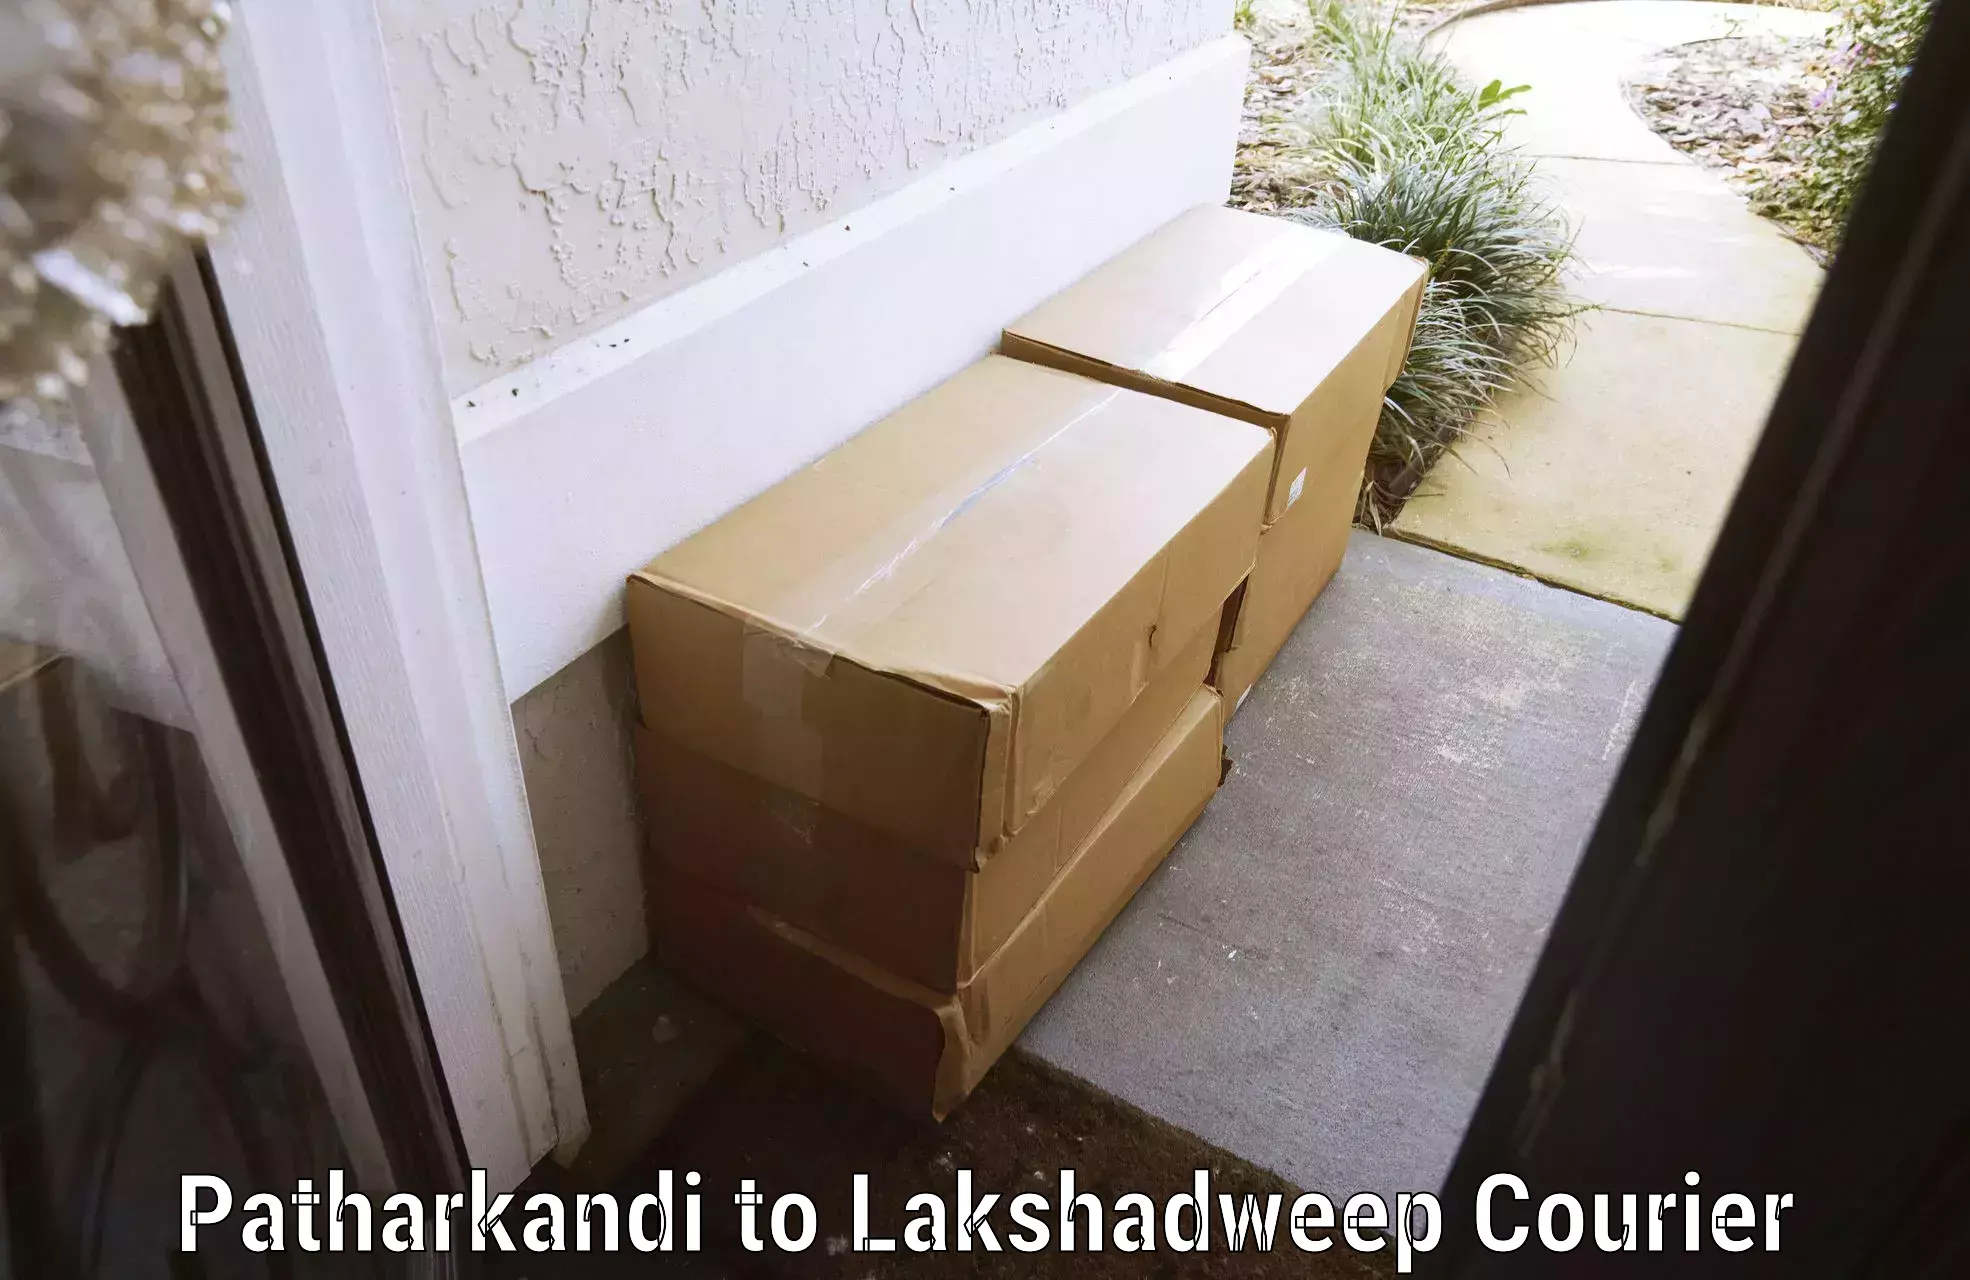 Baggage courier calculator Patharkandi to Lakshadweep